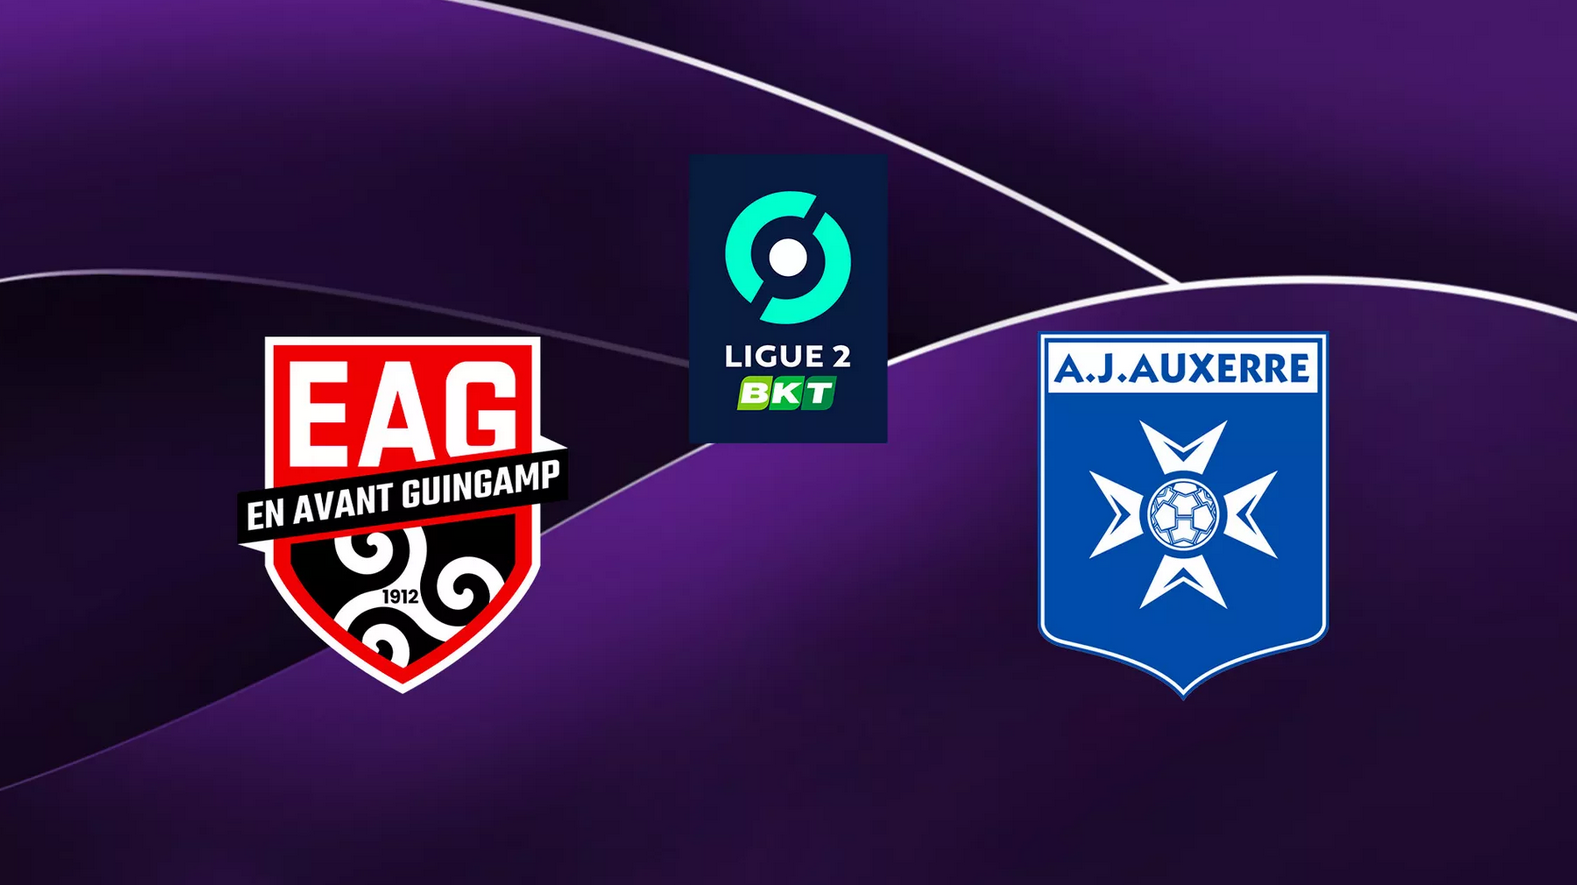 Guingamp (EAG) / Auxerre (AJA) (TV/Streaming) Sur quelle chaîne et à quelle heure regarder la rencontre de Ligue 2 ?